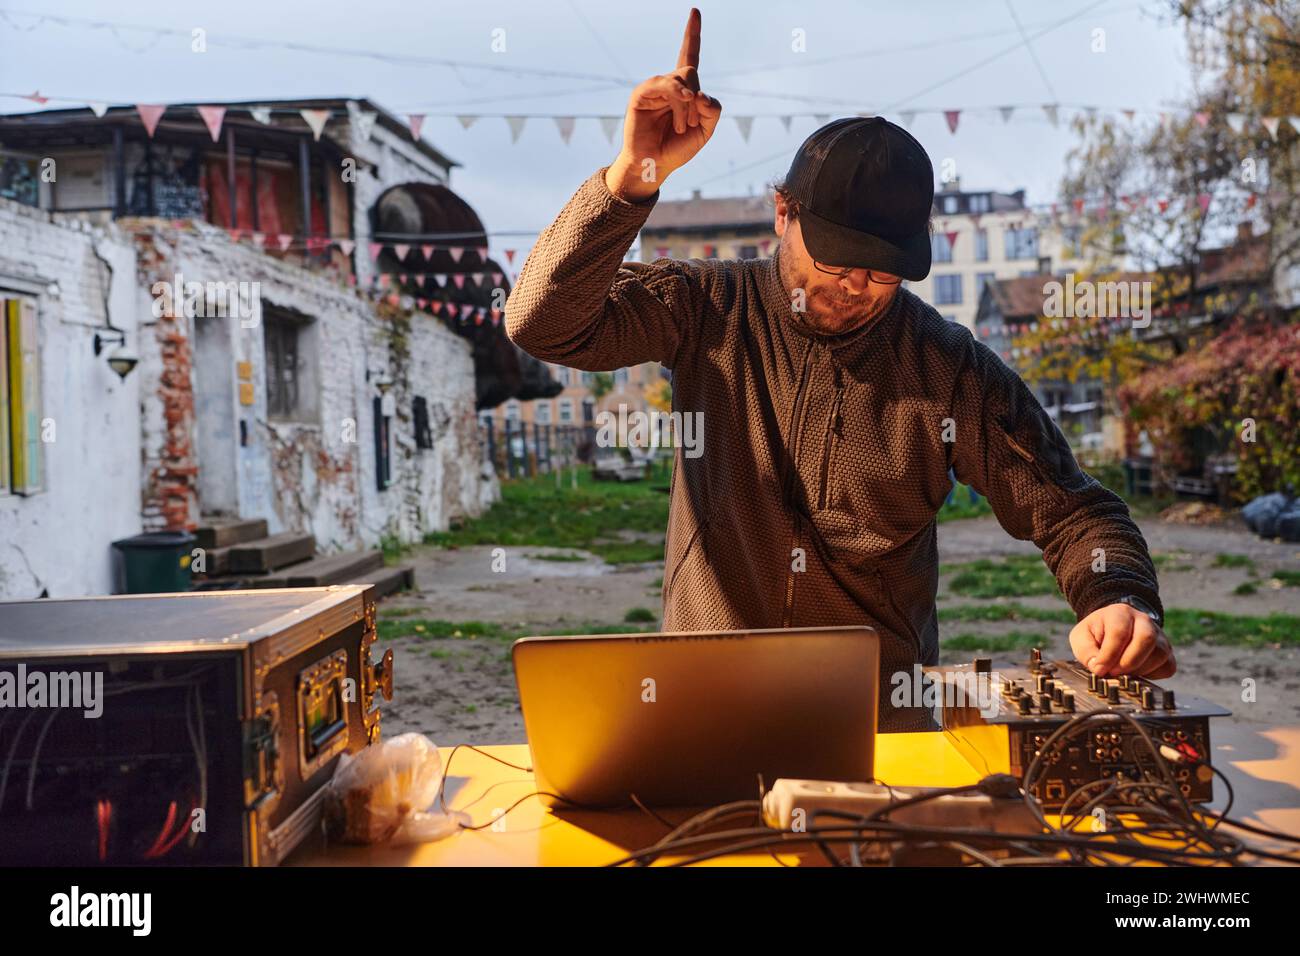 Un jeune homme divertit un groupe d'amis dans l'arrière-cour de sa maison, devenant leur DJ et jouant de la musique dans une ambiance décontractée Banque D'Images